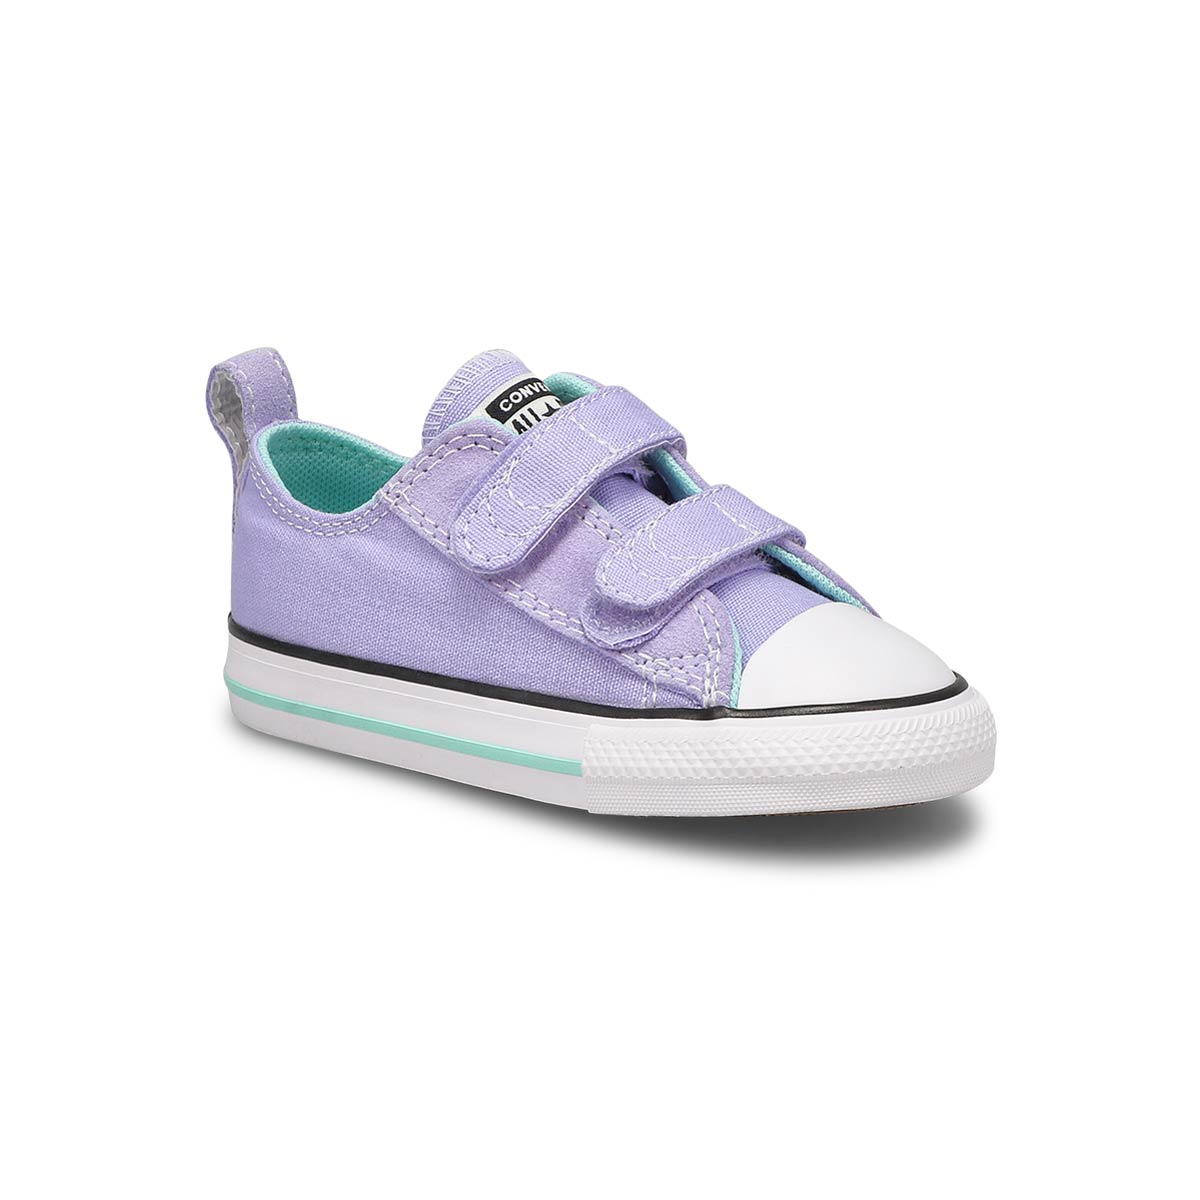 Infants' CT All Star 2V Sneaker